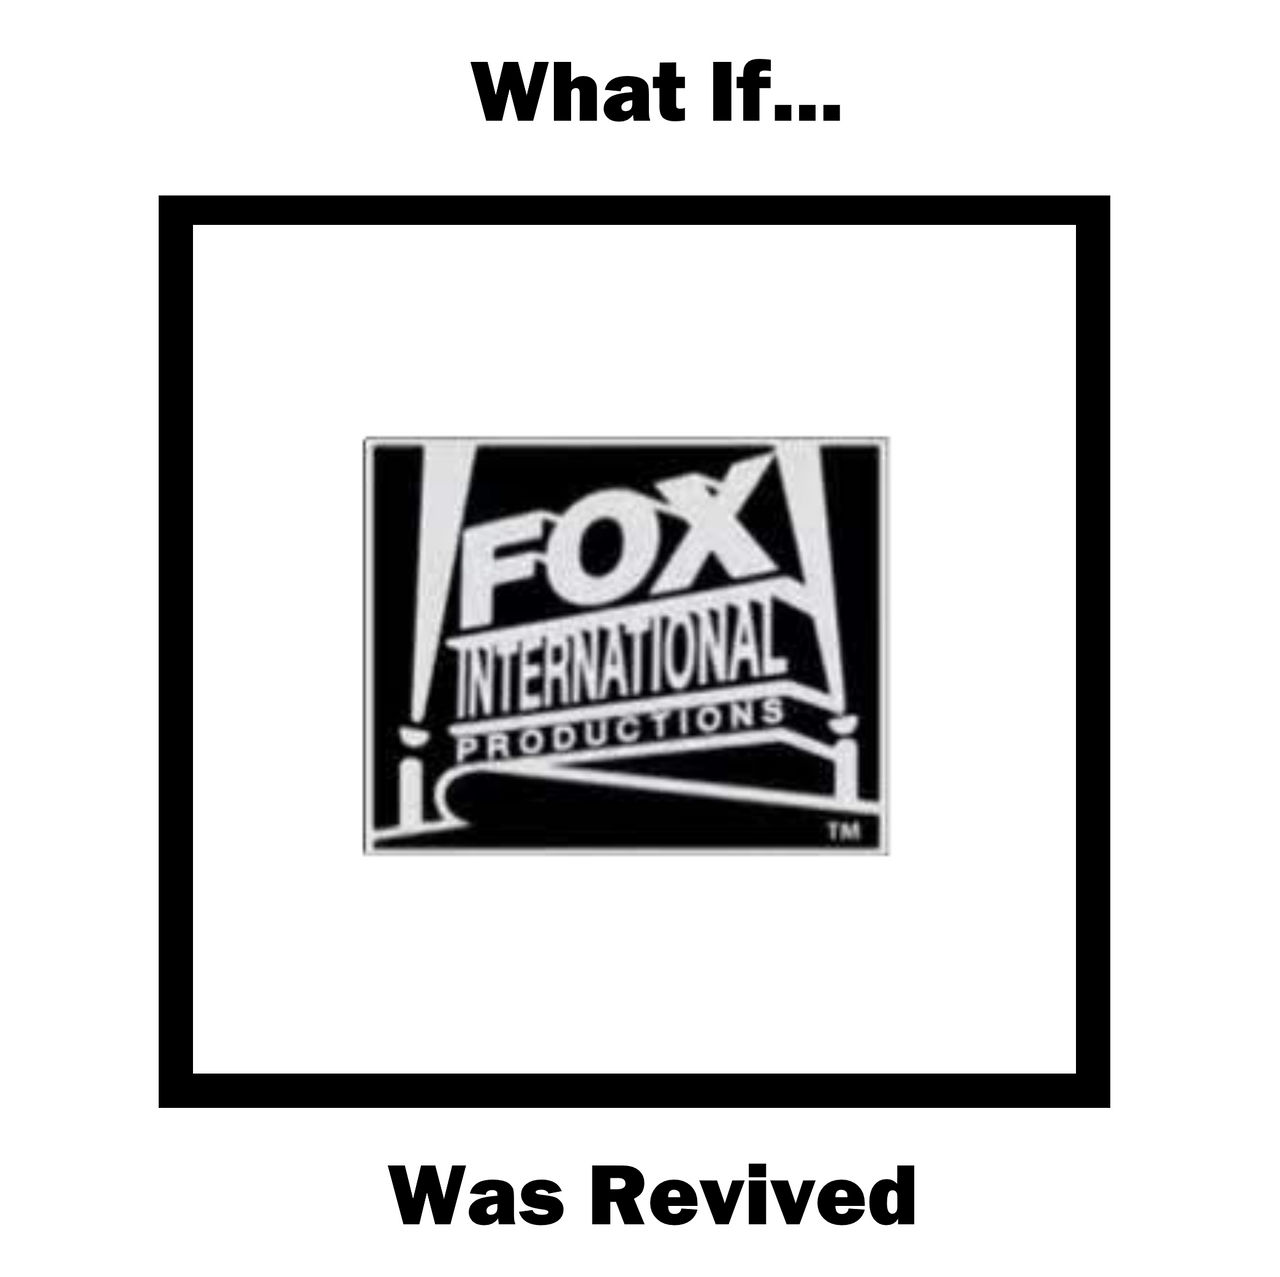 What if PBS made their own Fox logo - BiliBili